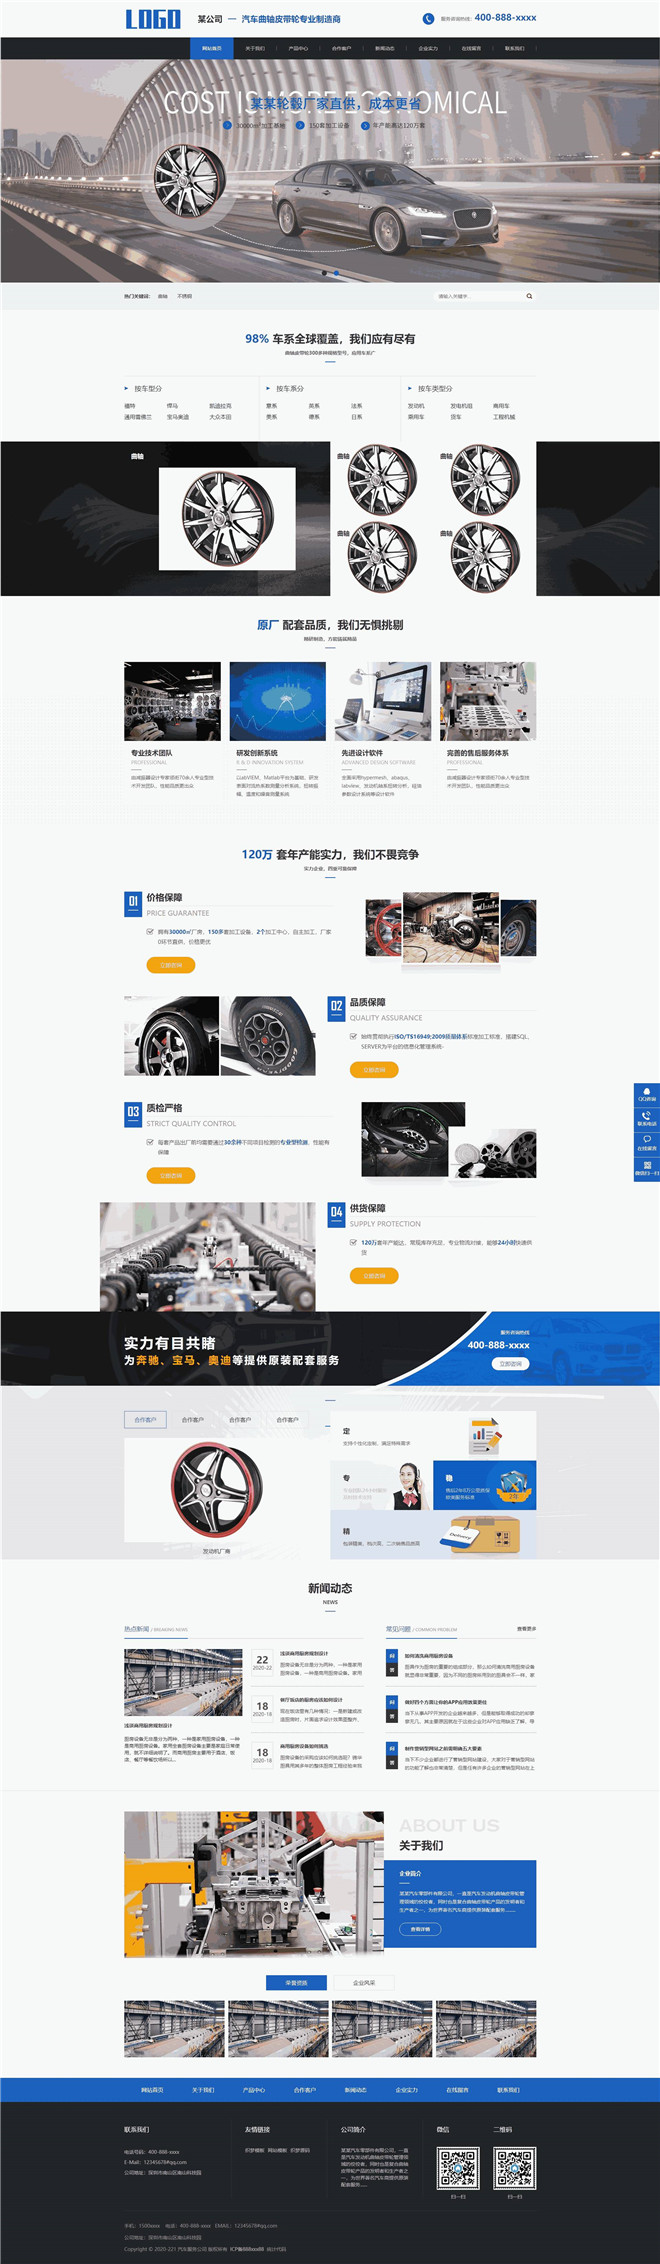 营销型汽车曲轴皮带轮销售公司网站模板截图